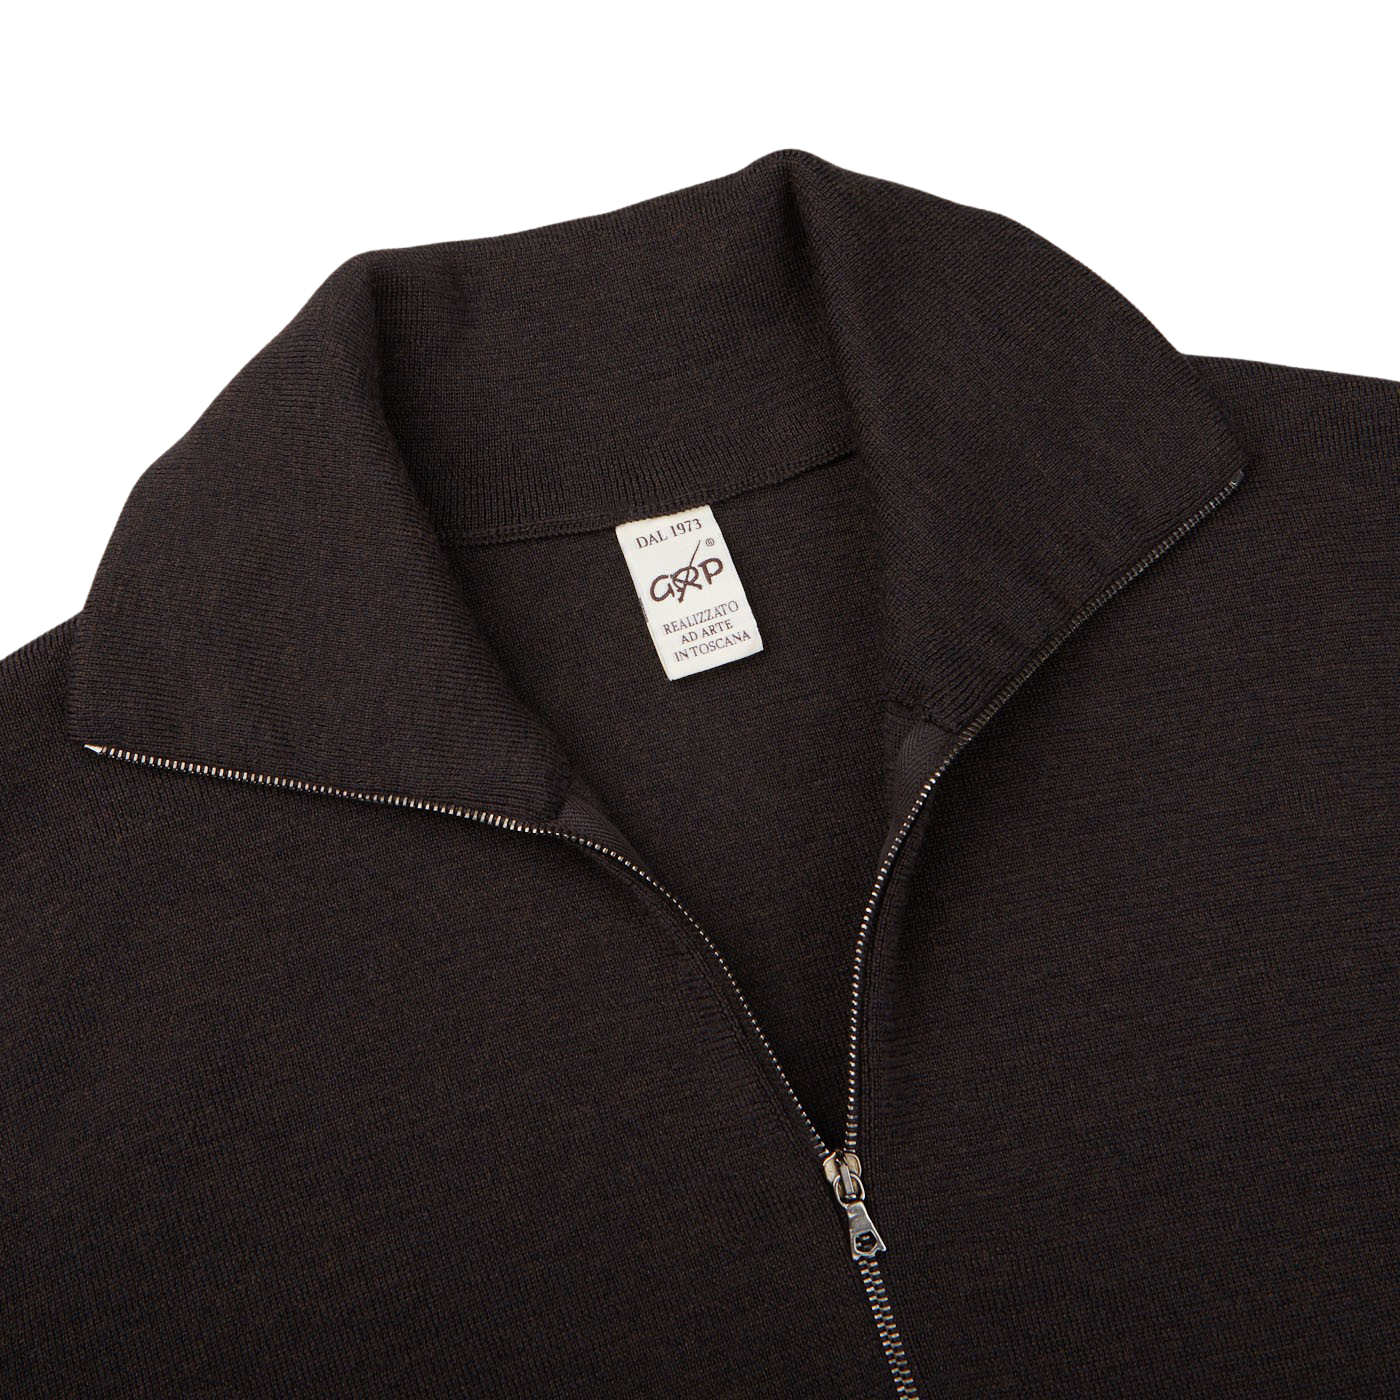 A G.R.P Brown Melange Merino Wool Zip Jacket made of merino wool.